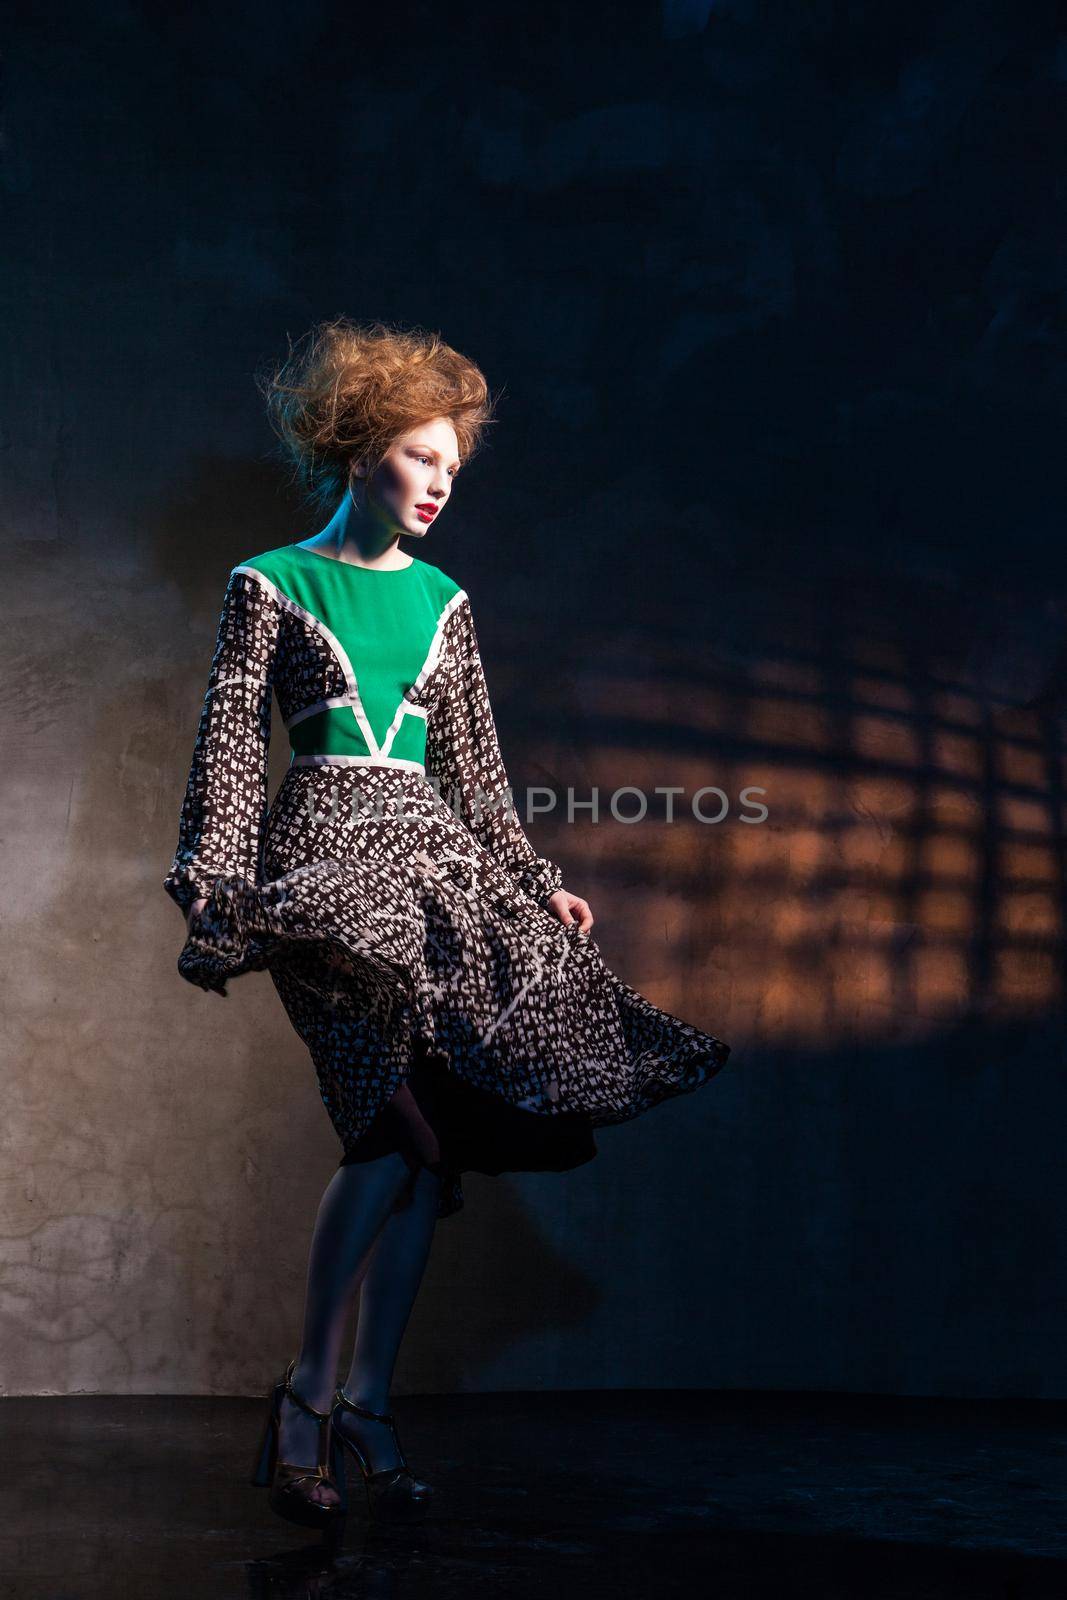 Fashion women in green dress over dark by Julenochek